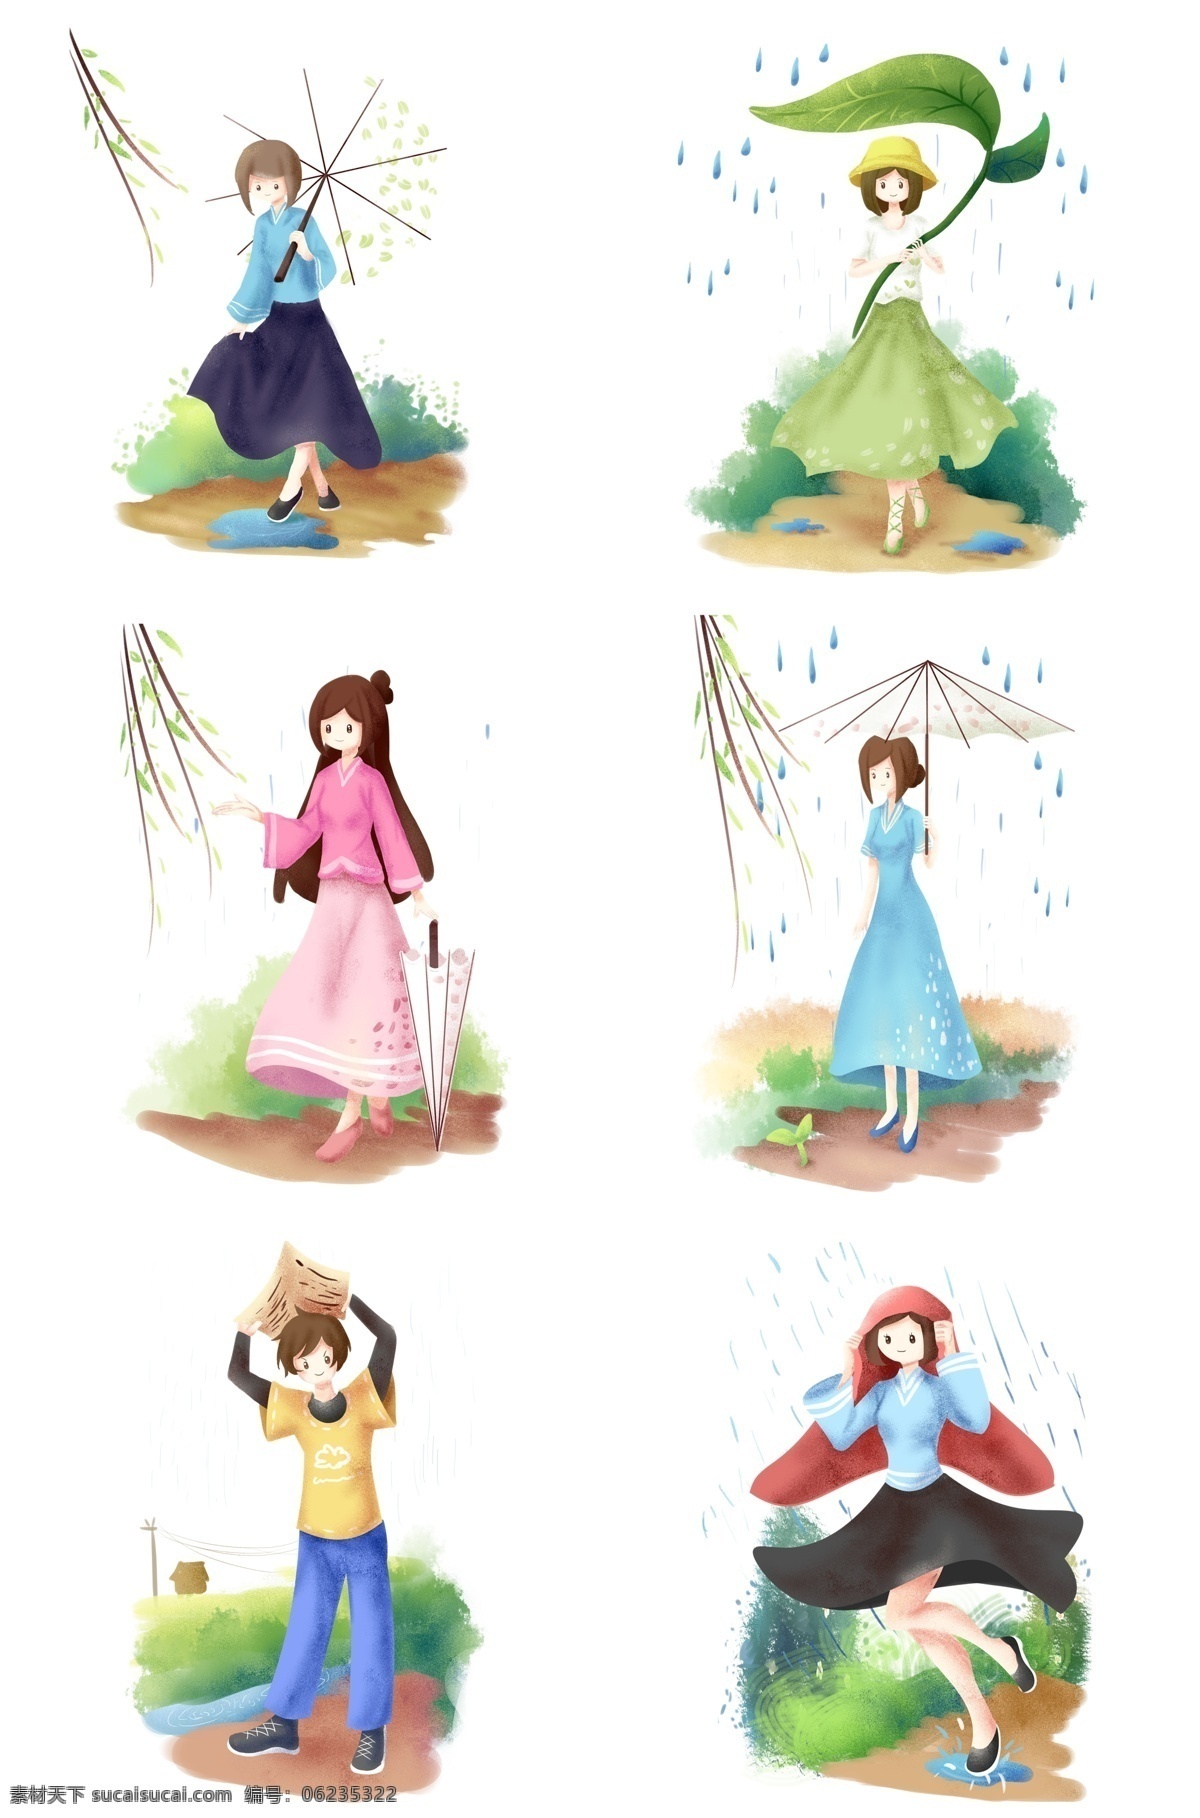 谷雨 节气 合集 插画 躲雨的女孩 卡通的插画 谷雨插画 谷雨下雨 谷雨节气 下雨天气 漂亮的雨伞